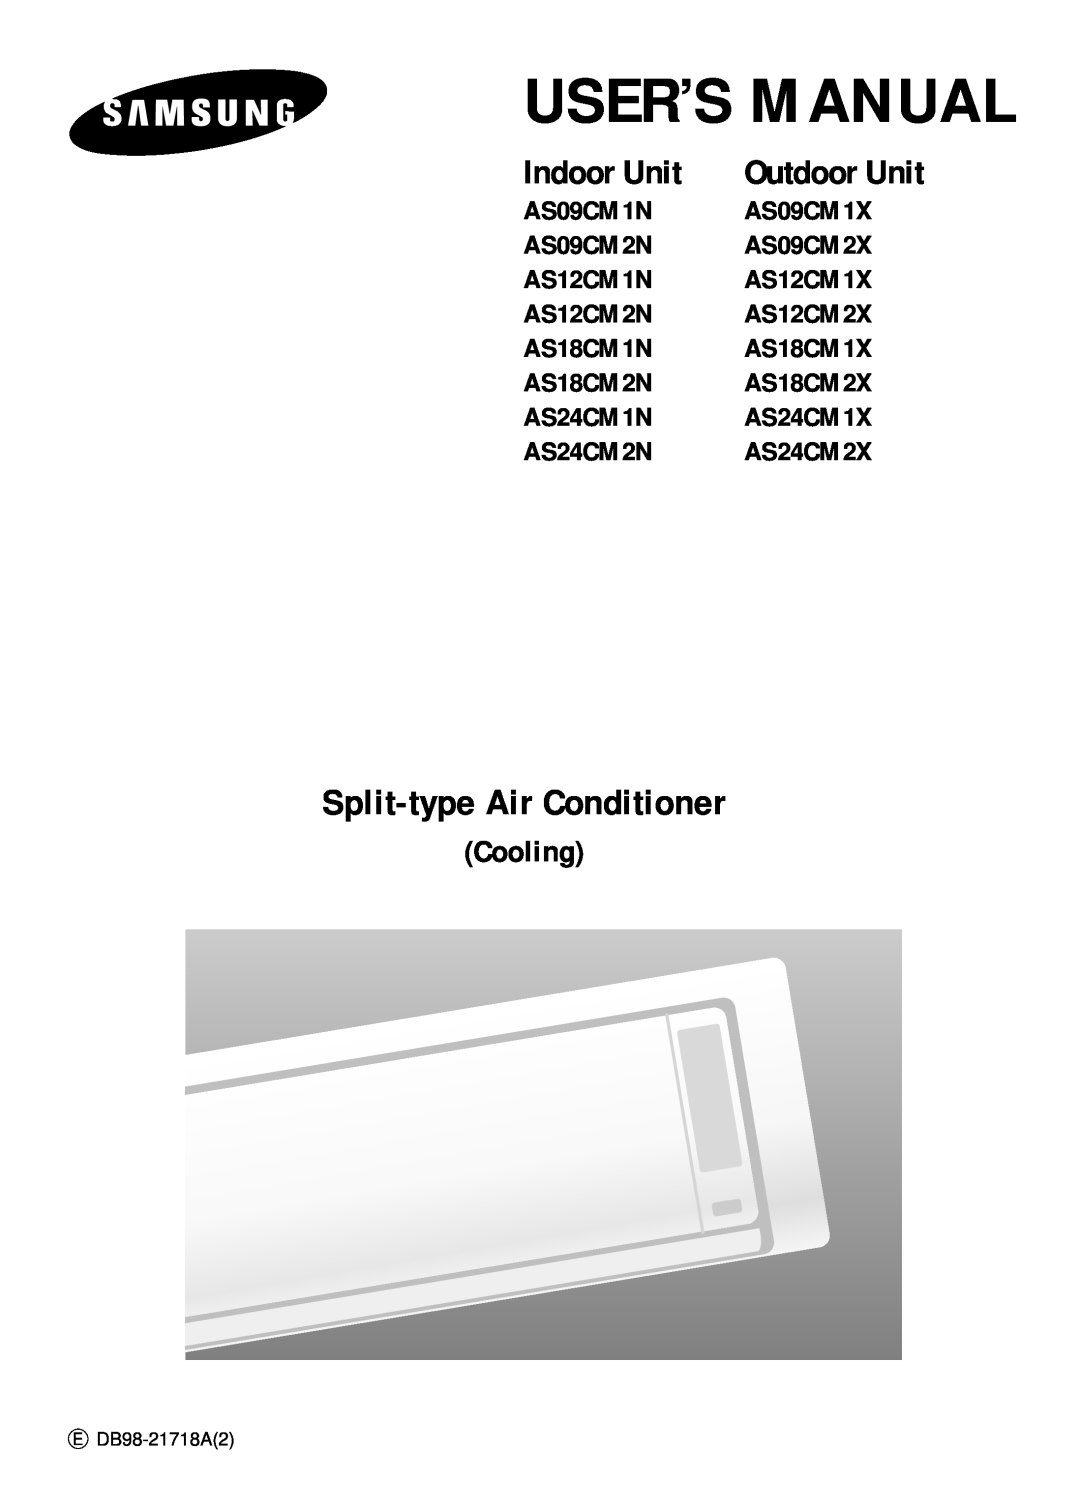 Samsung AS09CM2X, AS09CM1X, AS09CM2N, AS09CM1N, AS18CM1N, AS18CM2N user manual Split-typeAir Conditioner, Indoor Unit, Cooling 